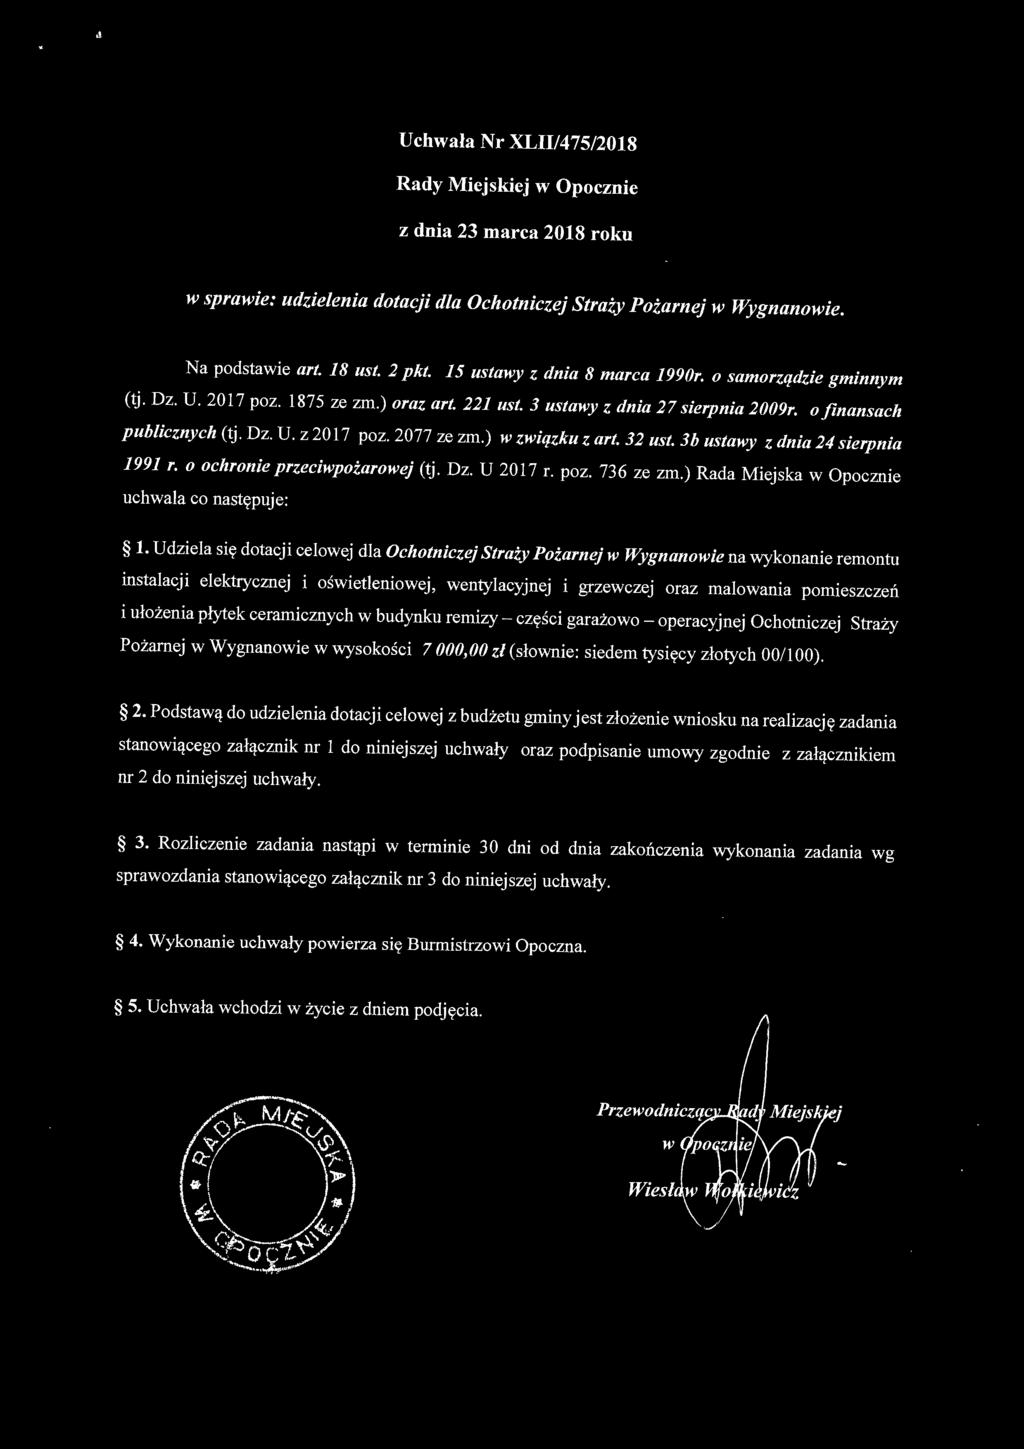 Jb ustawy z dnia 24 sierpnia 1991 r. o ochronie przeciwpożarowej (tj. Dz. U 2017 r. poz. 736 ze zm.) Rada Miejska w Opocznie uchwala co następuje: 1.